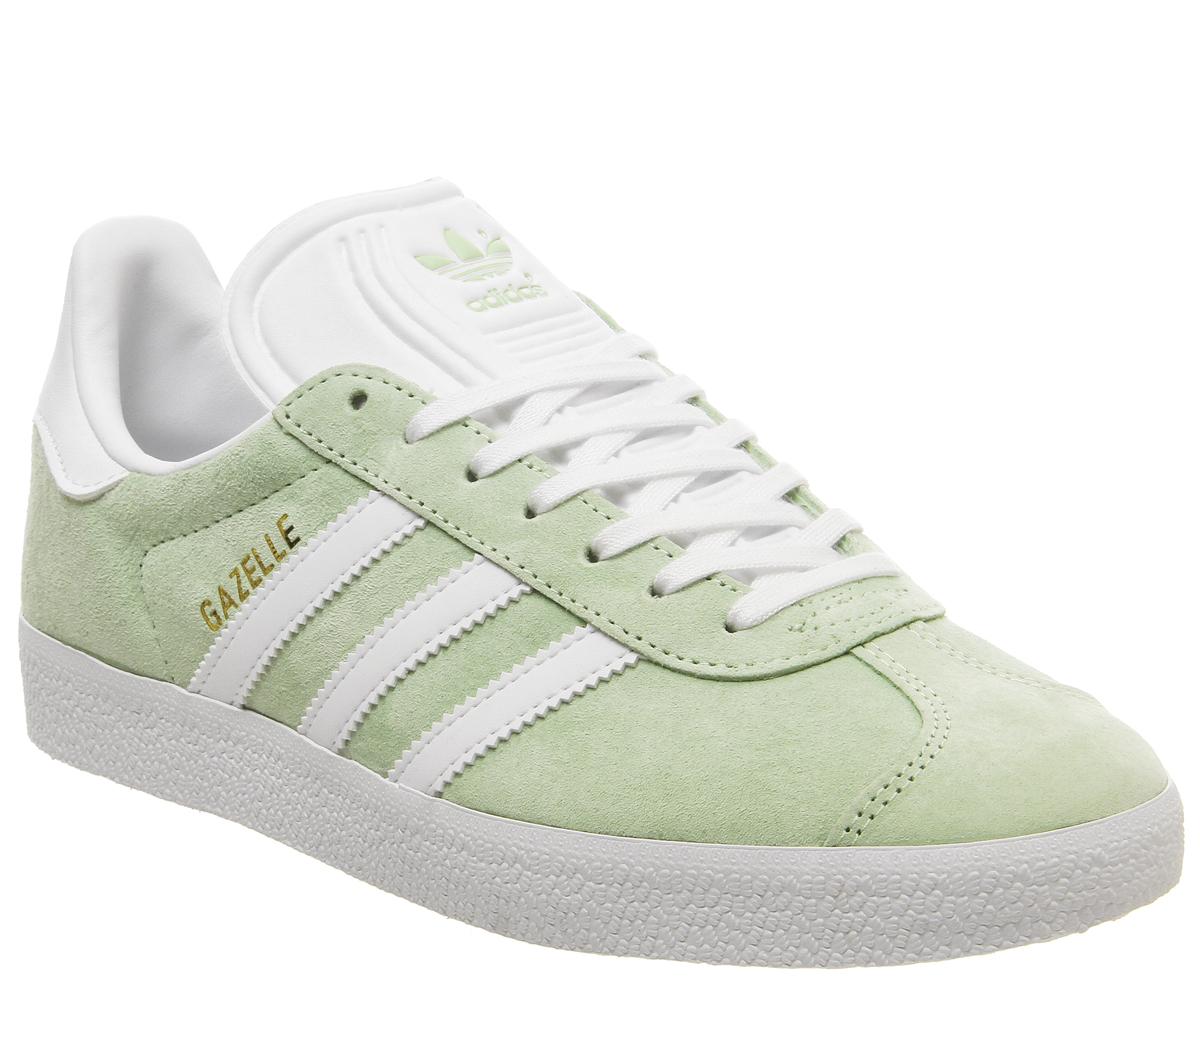 adidas gazelle green and white